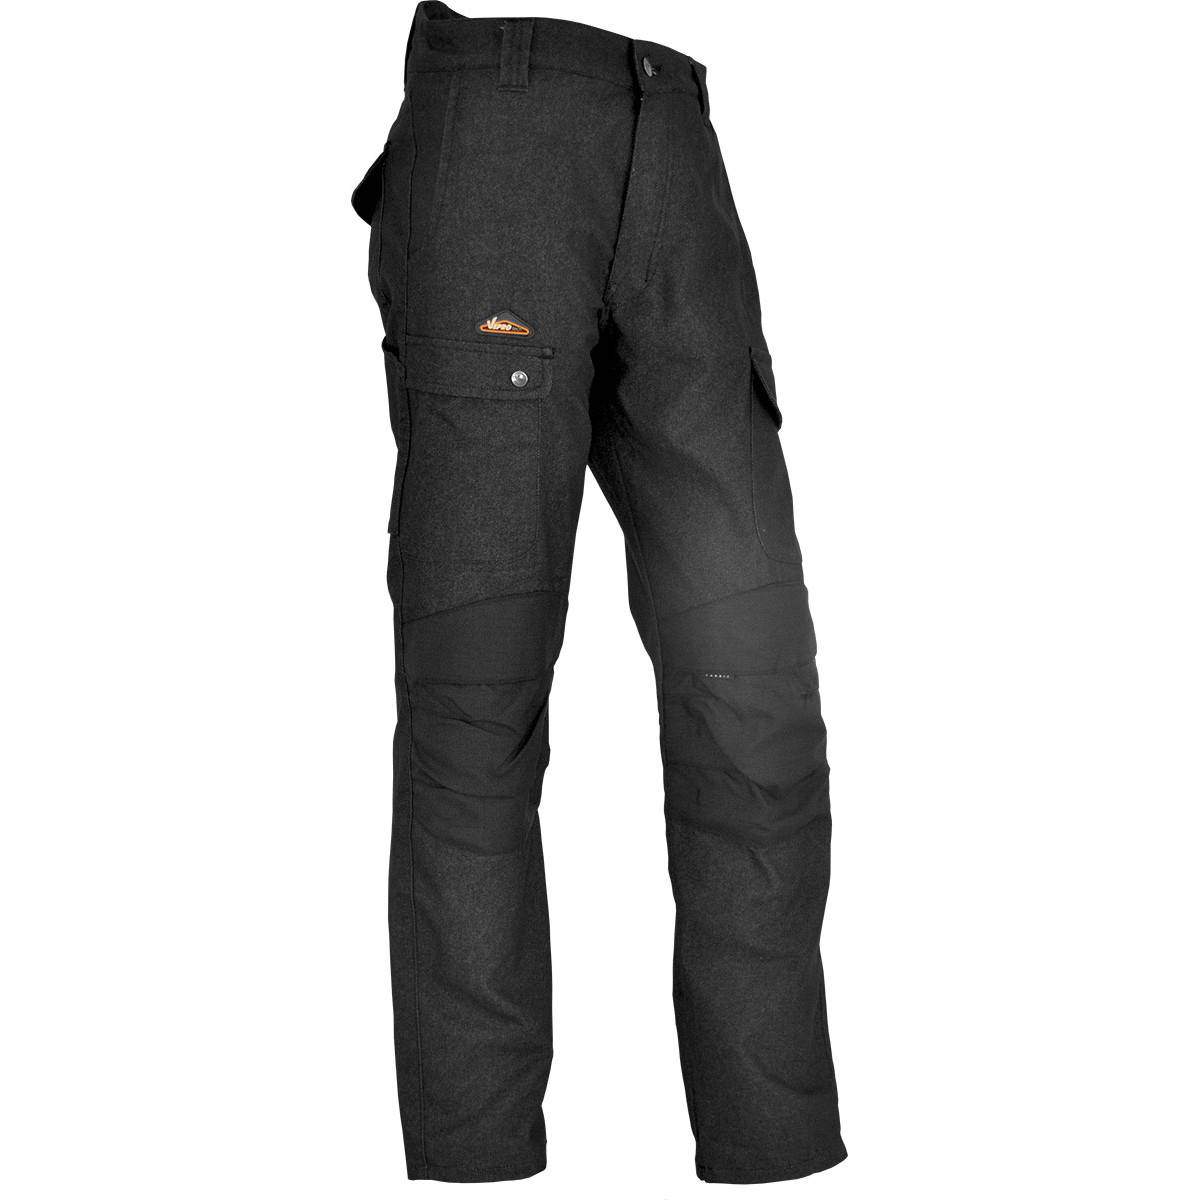 Pantalon de chantier ENDU Taille 44 Noir, poches multiples, genouillères incluses